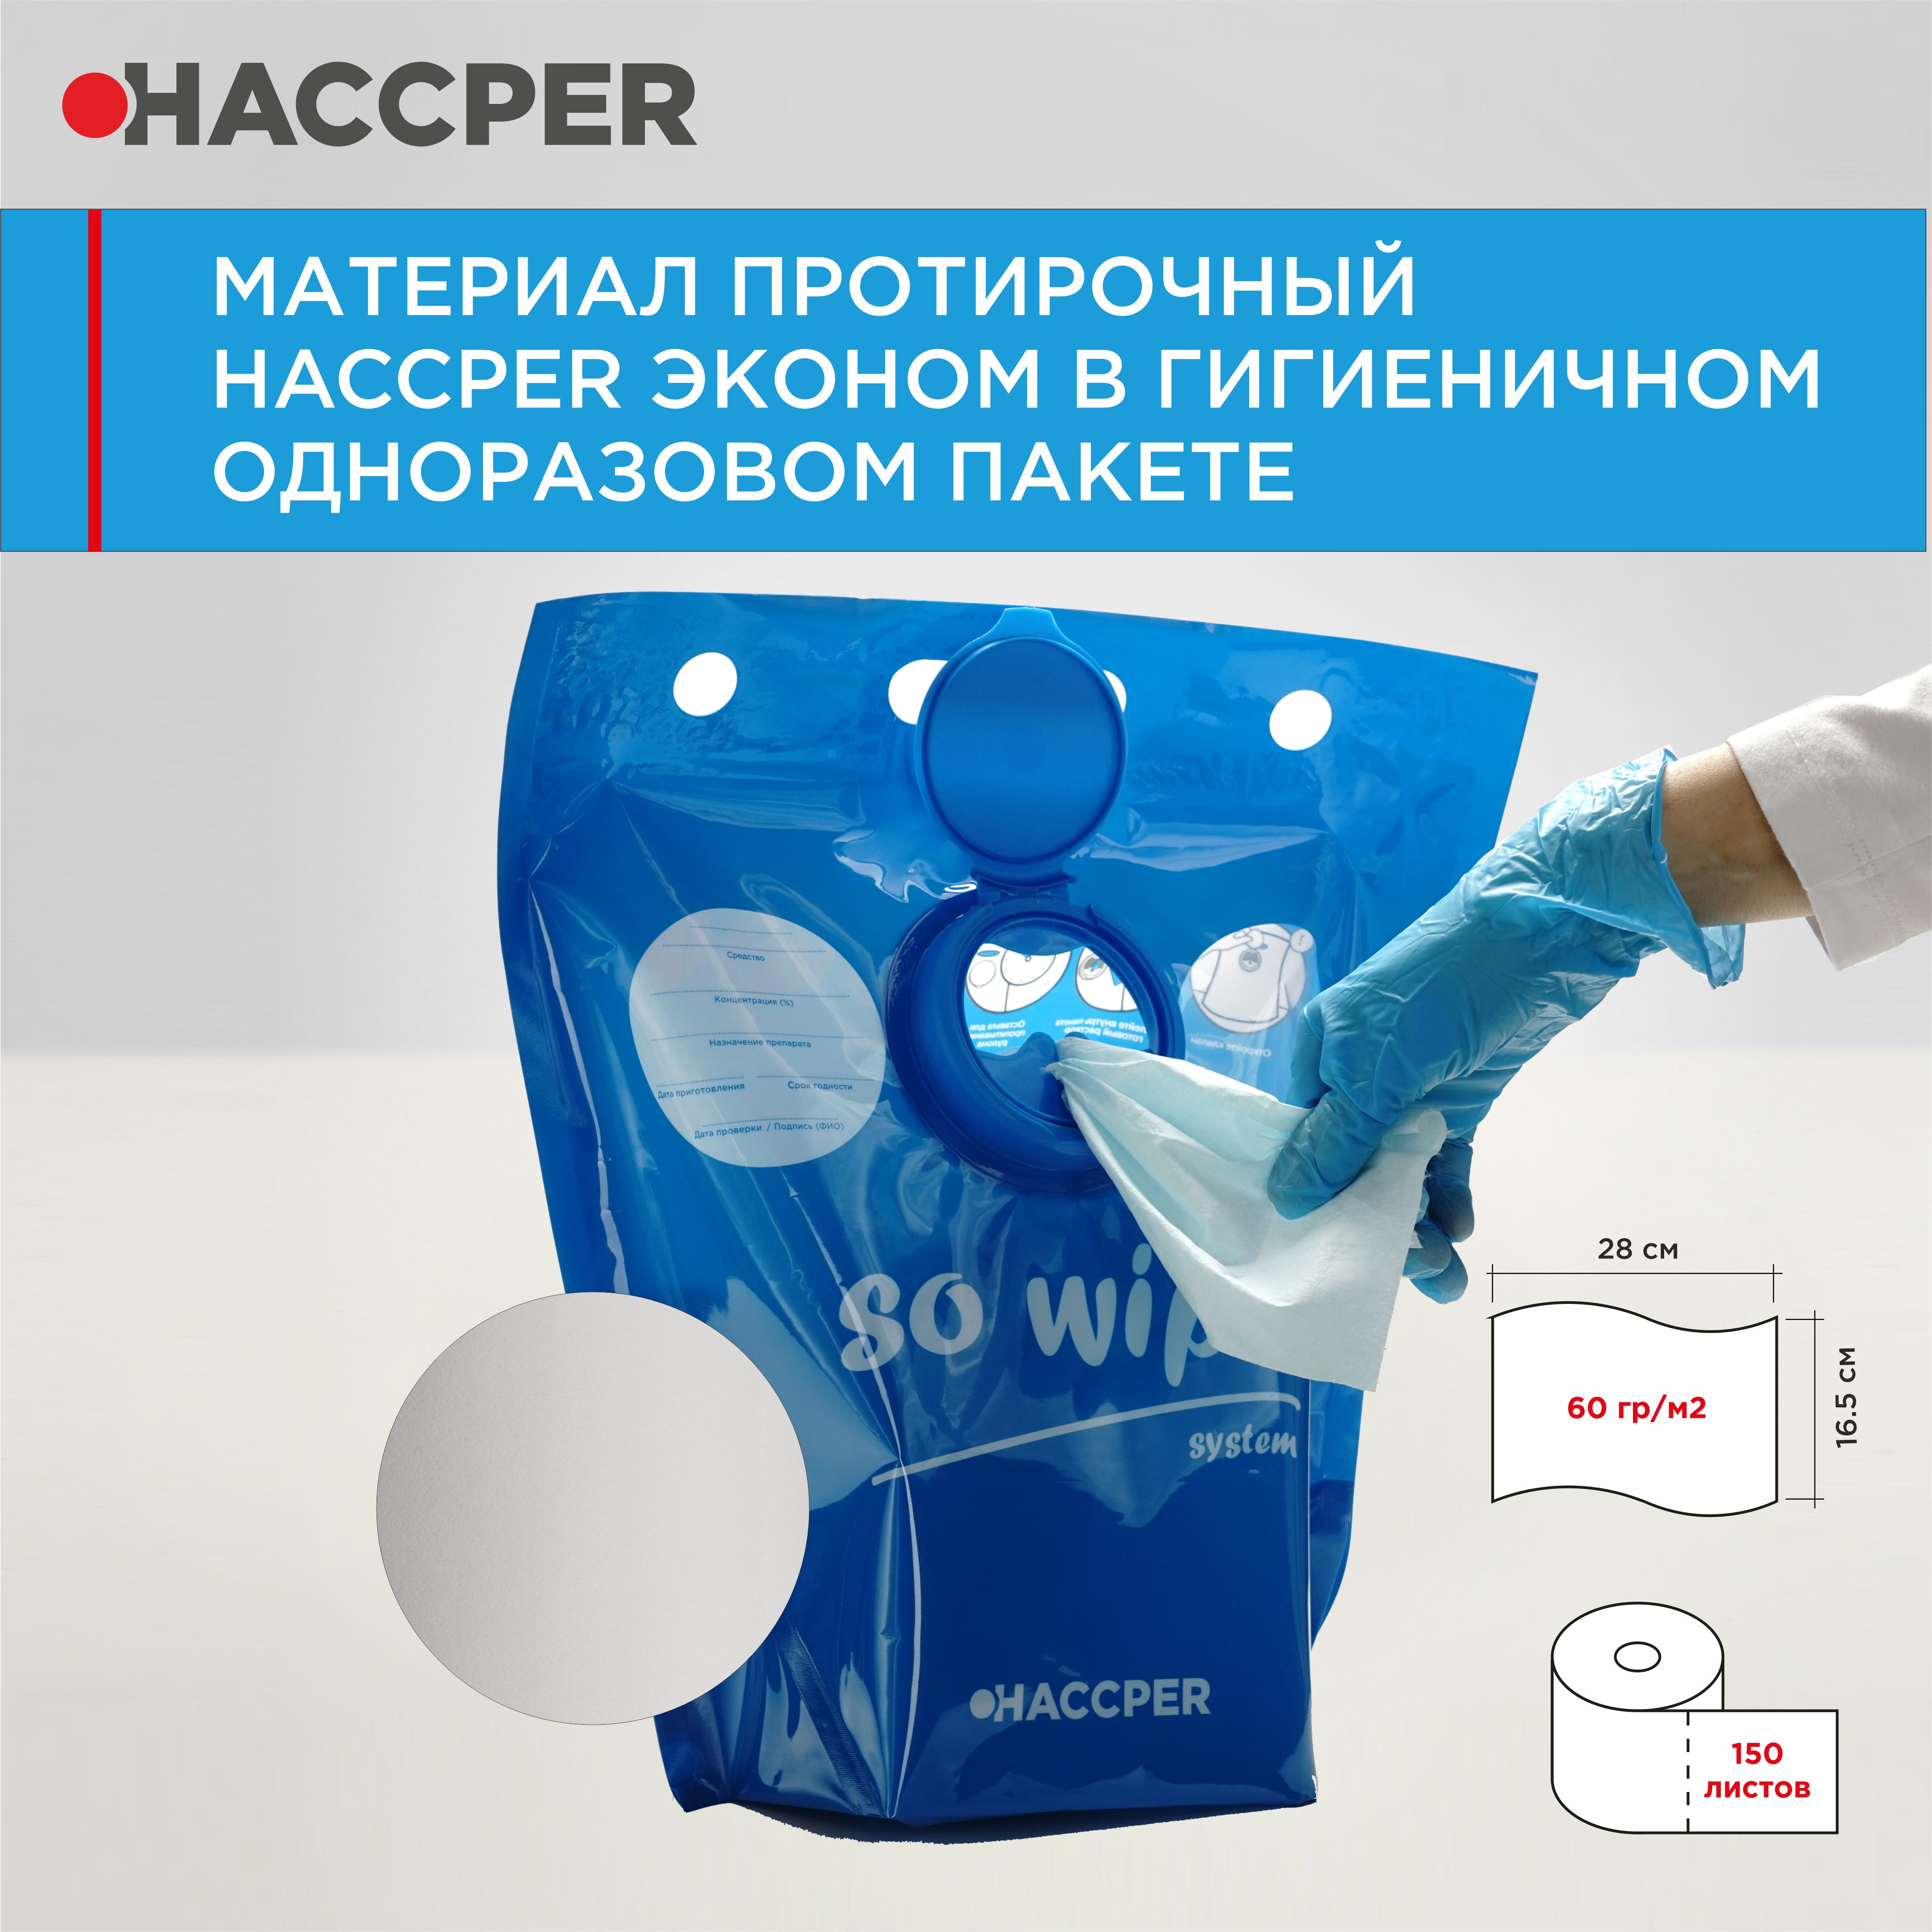 Материал протирочный HACCPER Эконом, 165х280 мм, бел,150 л/рул, в гигиеничном одноразовом пакете